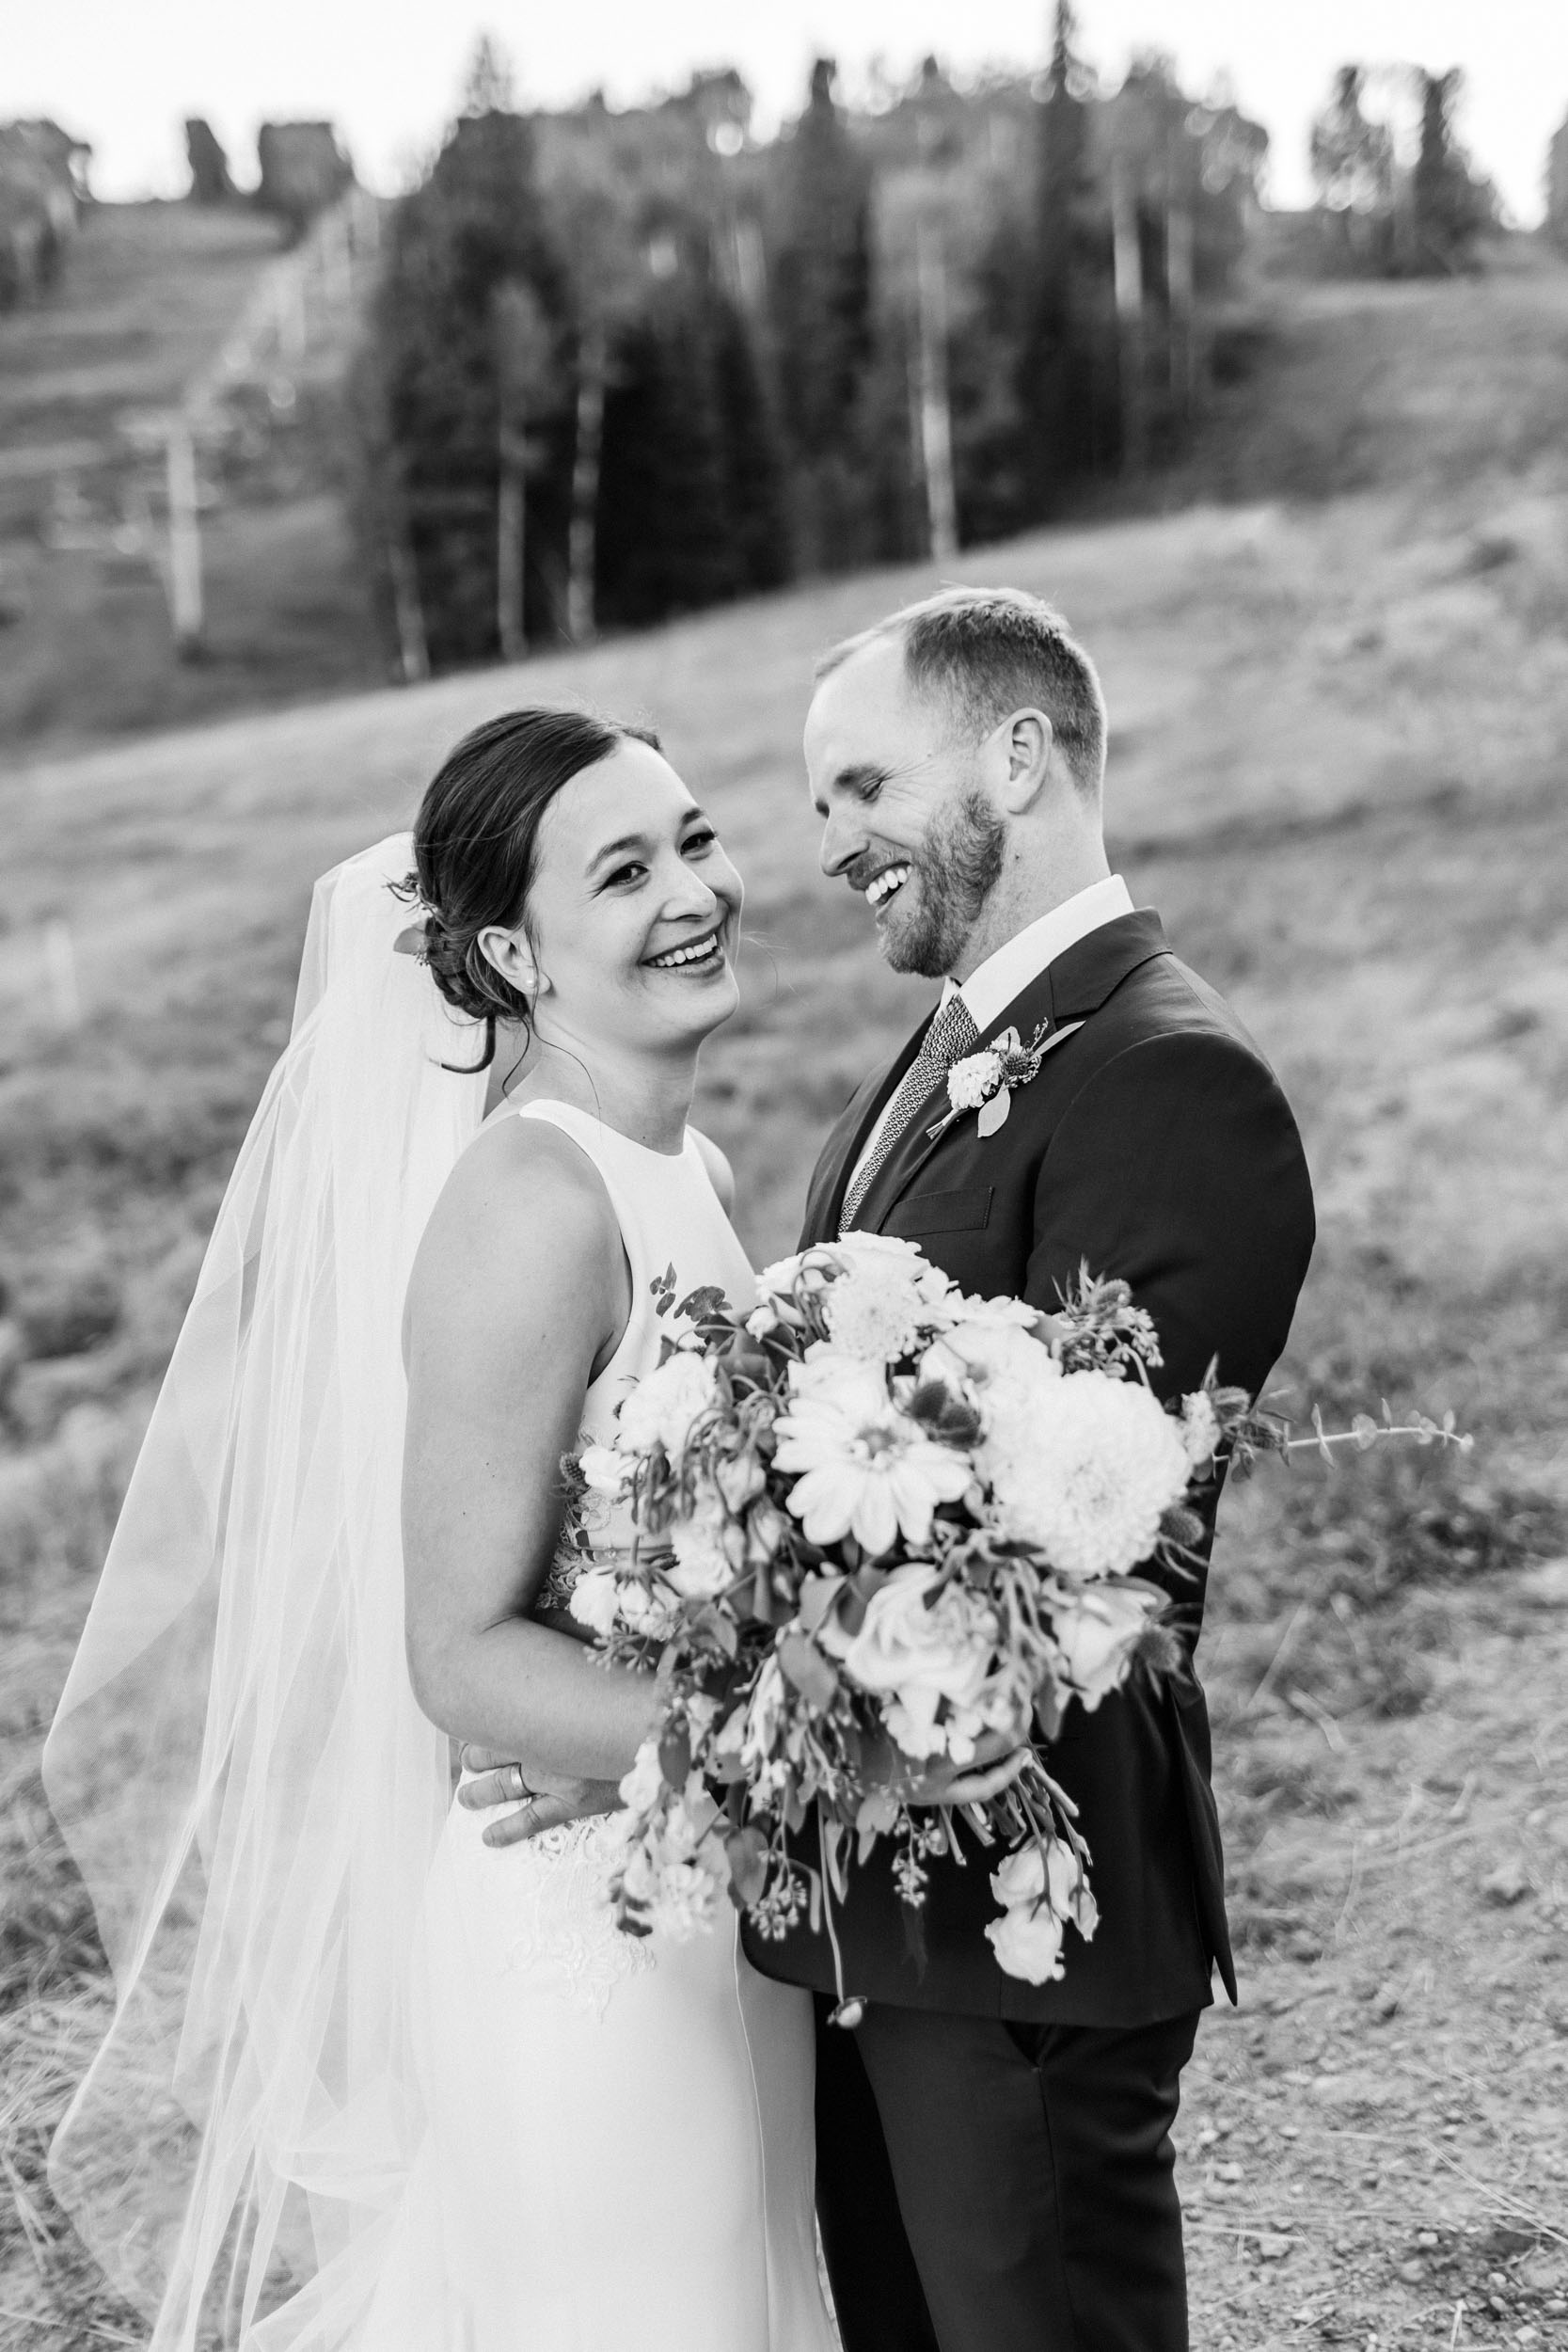 Durango Colorado wedding photos by Shea McGrath Photography Colorado Wedding Photographer